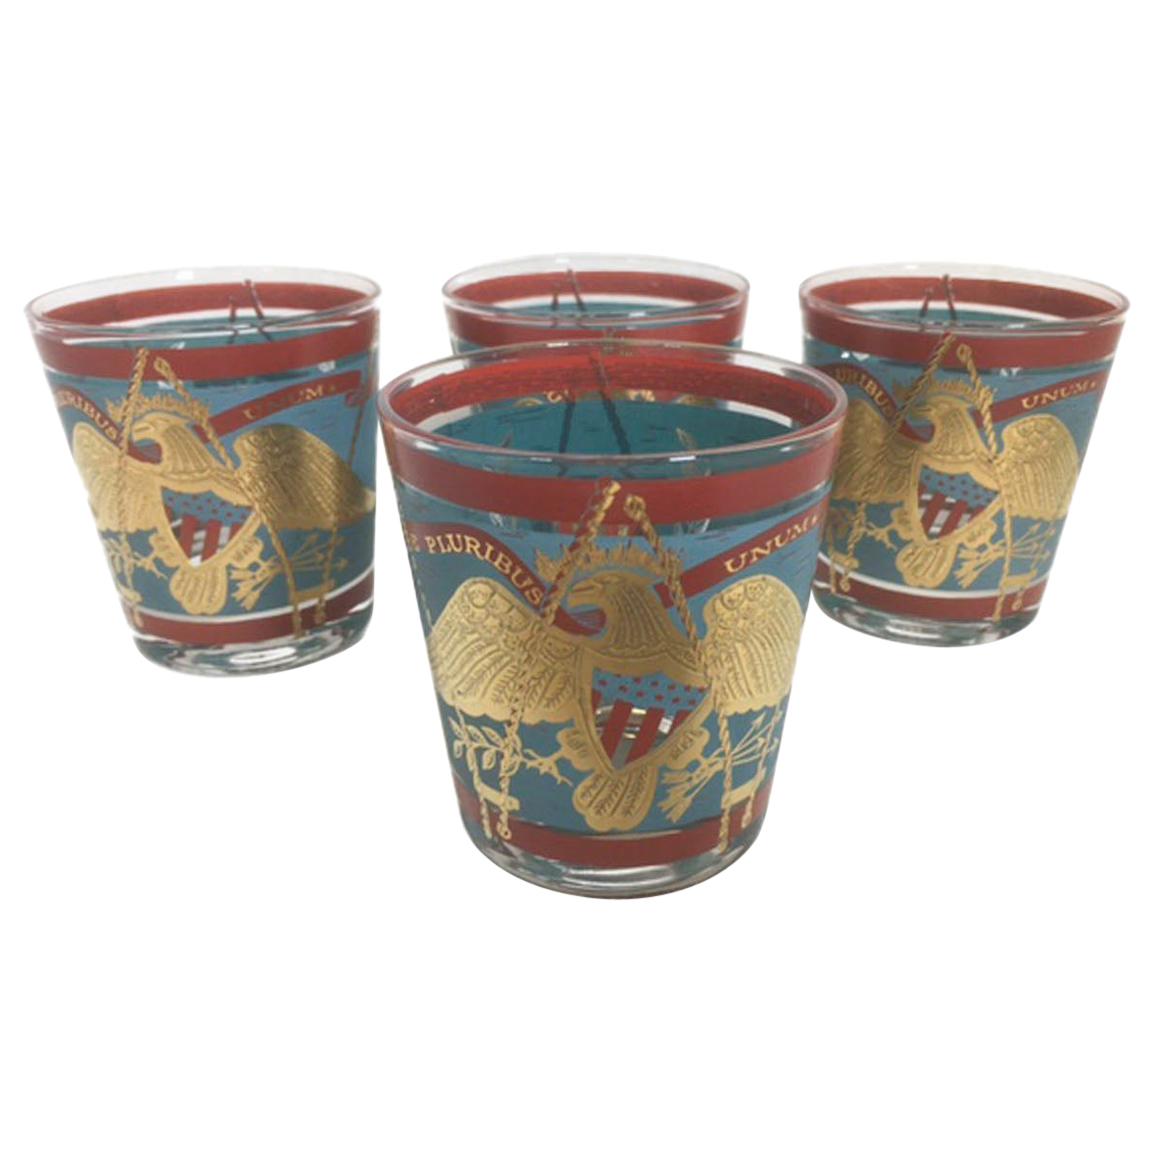 4 Vintage Cera Glassware Old Fashioned Glasses, Regimental Drum